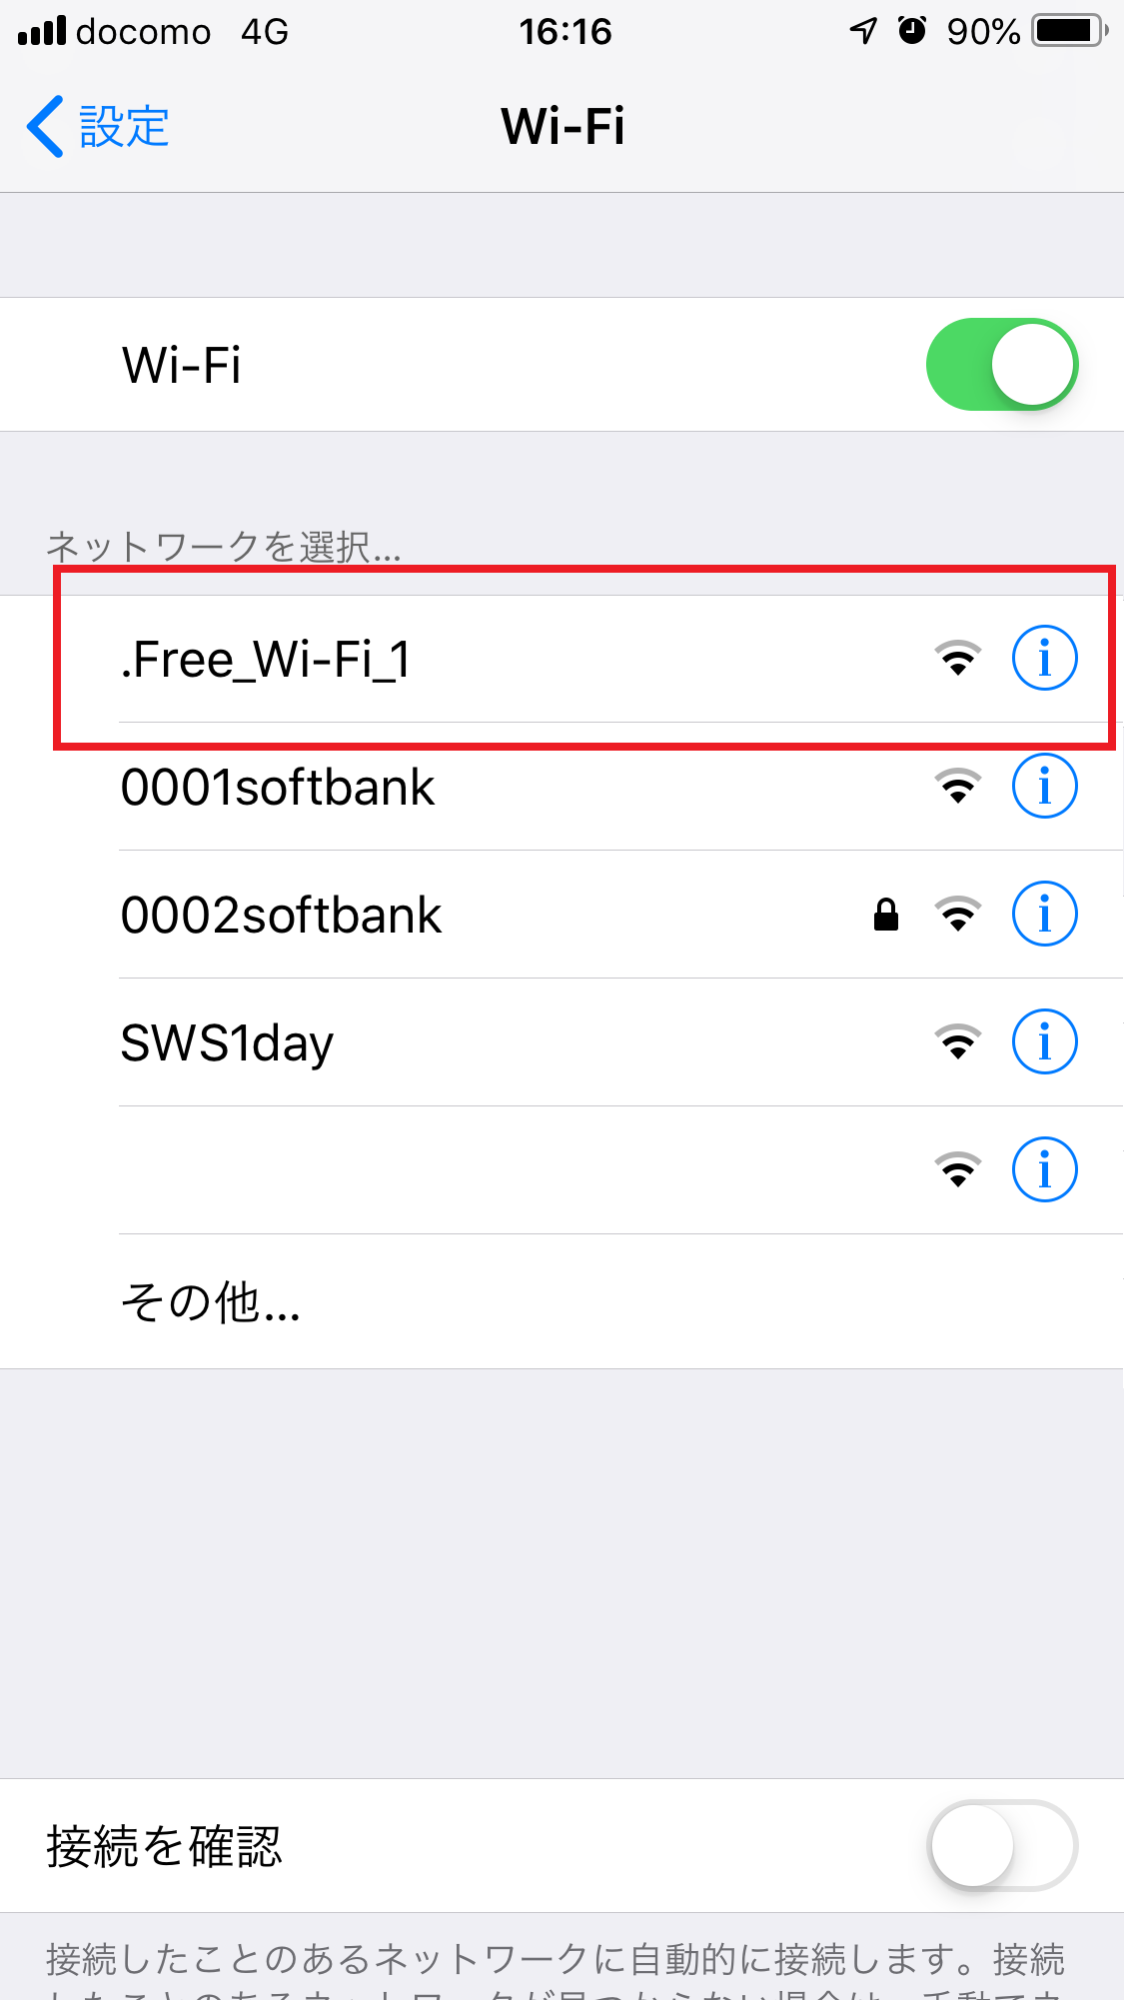 Wi-Fi(ワイファイ)接続を示した画像1